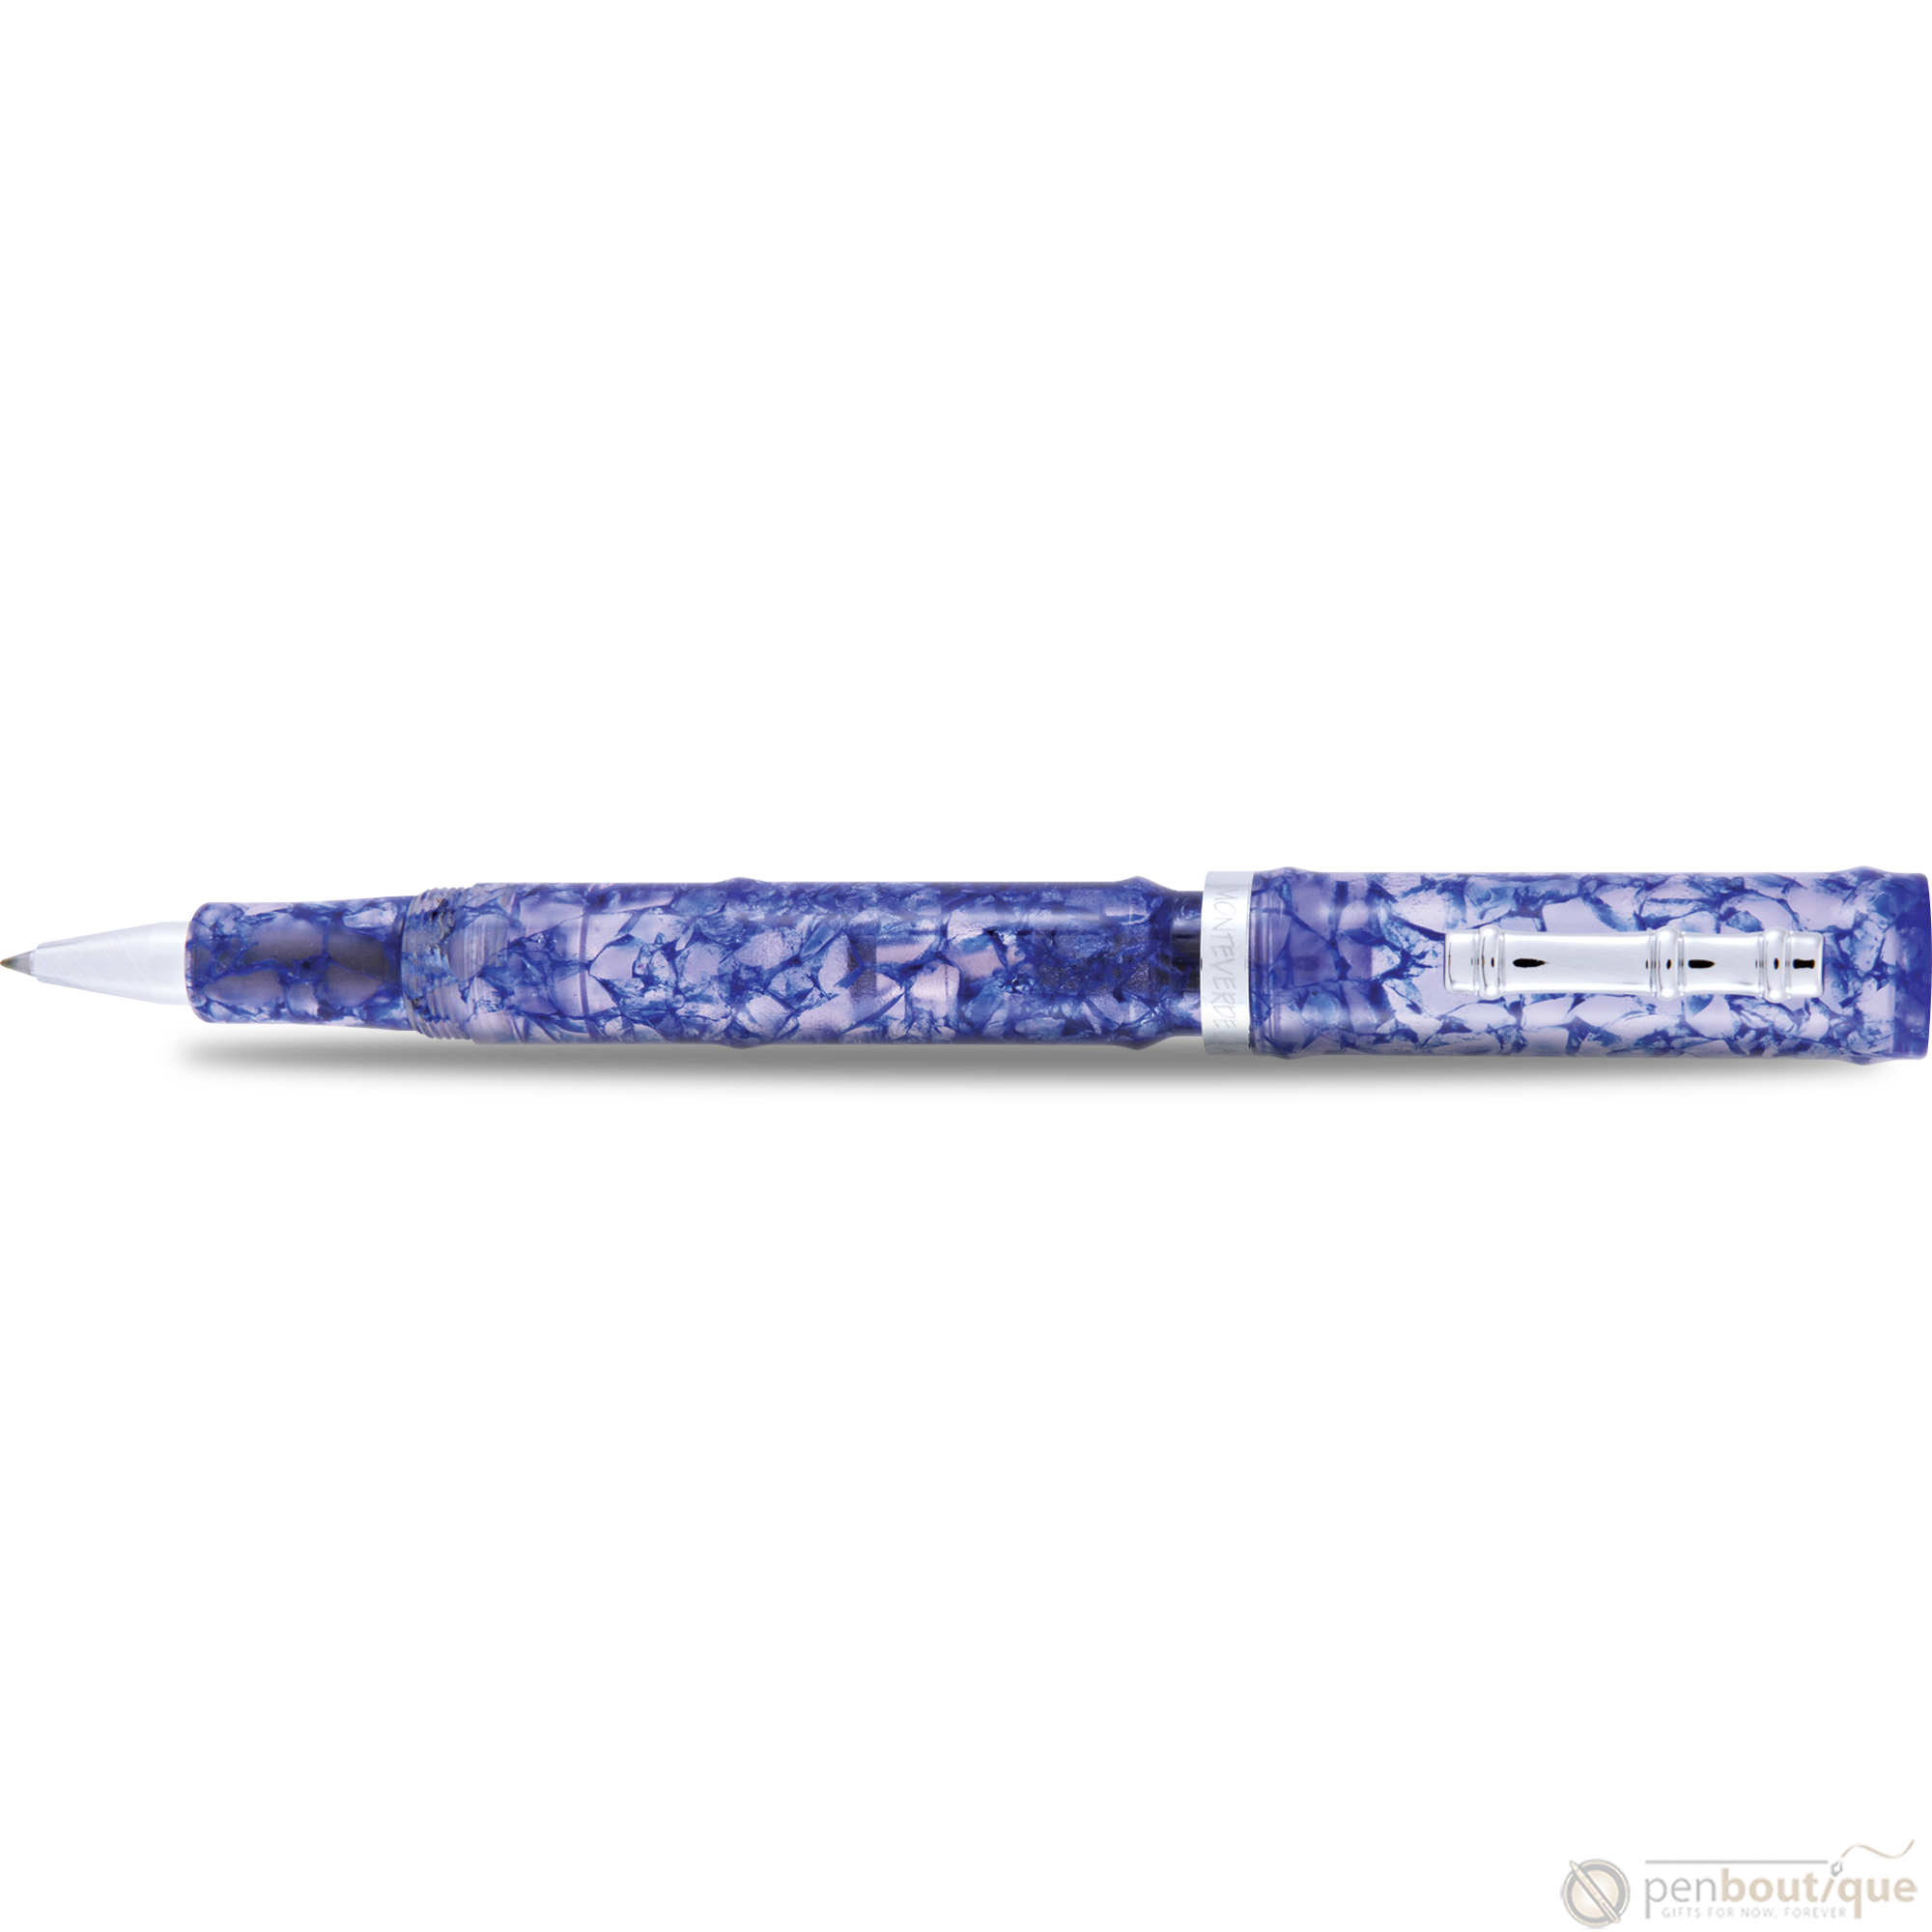 Monteverde Laguna Inkball - Blue-Pen Boutique Ltd